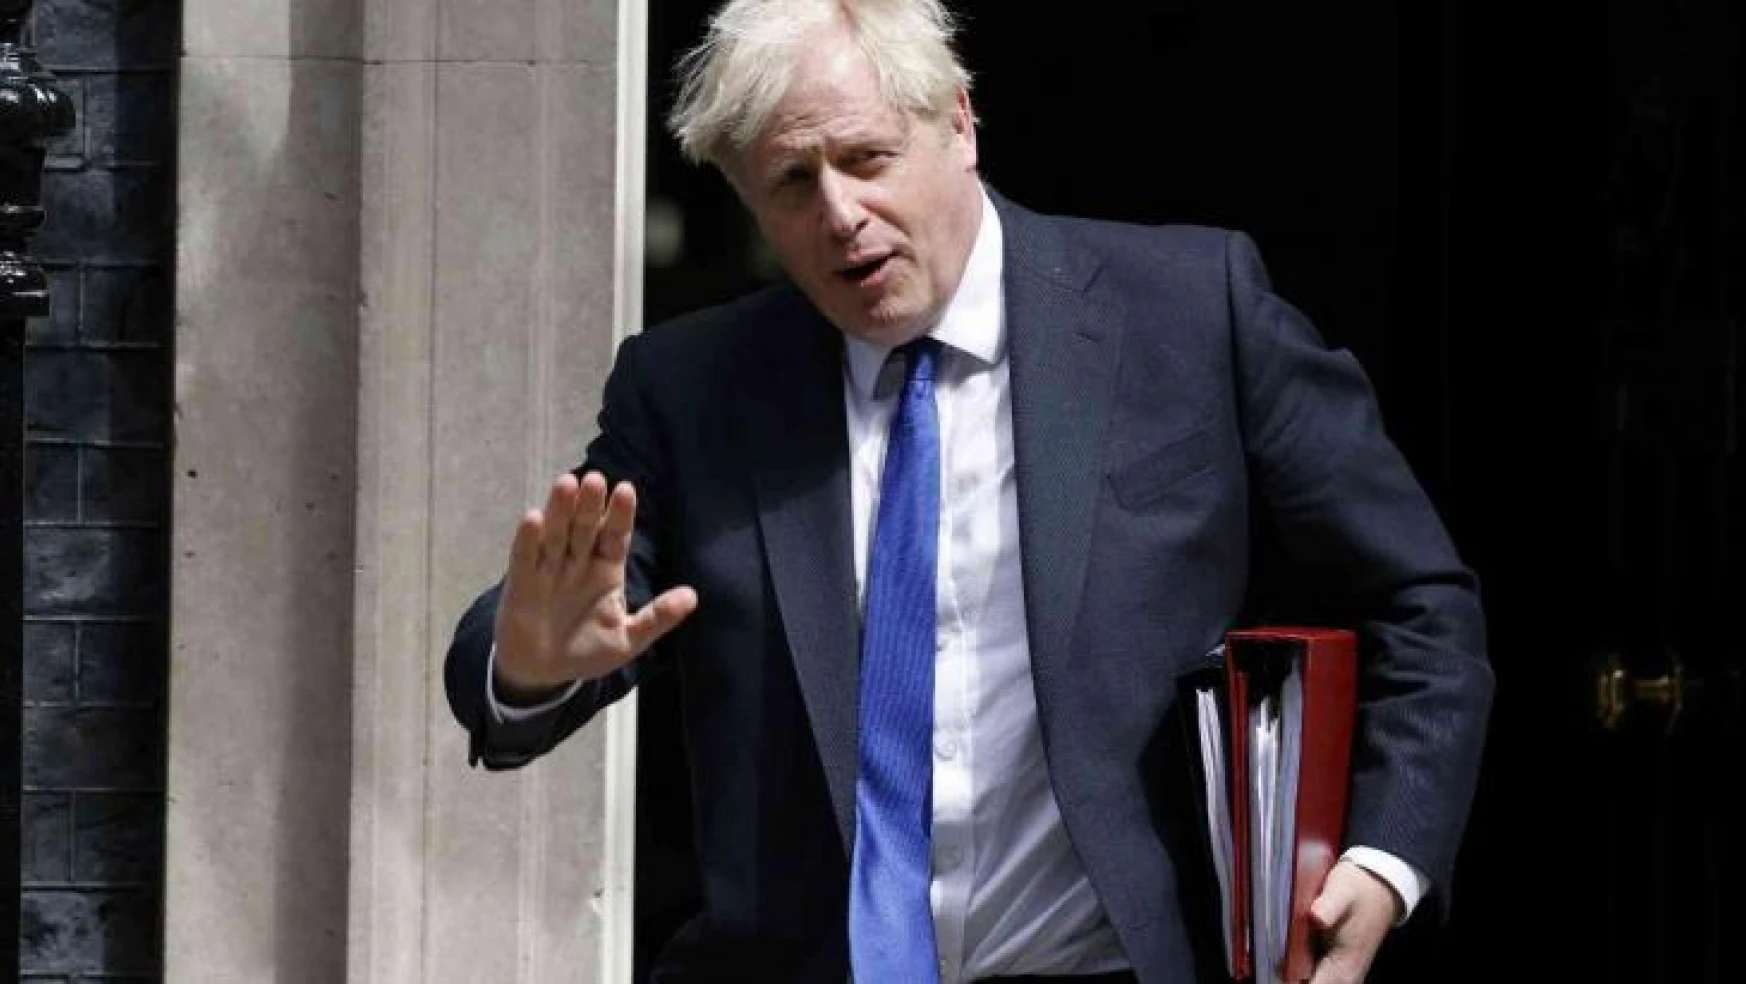 Boris Johnson parti liderliğinden istifa ediyor